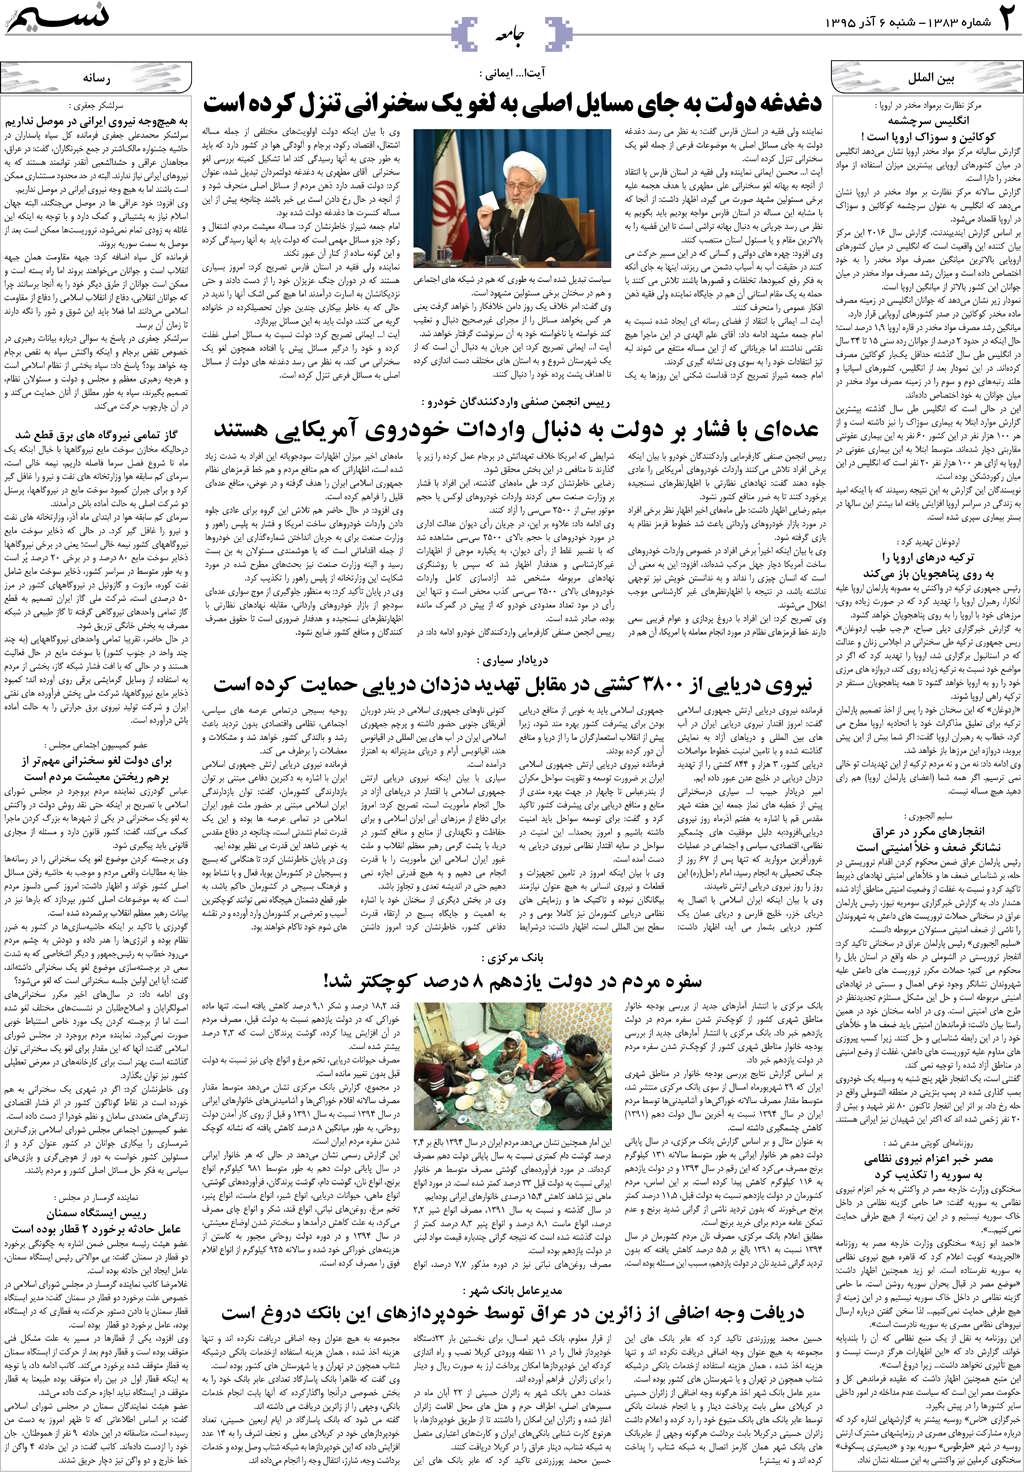 صفحه جامعه روزنامه نسیم شماره 1383